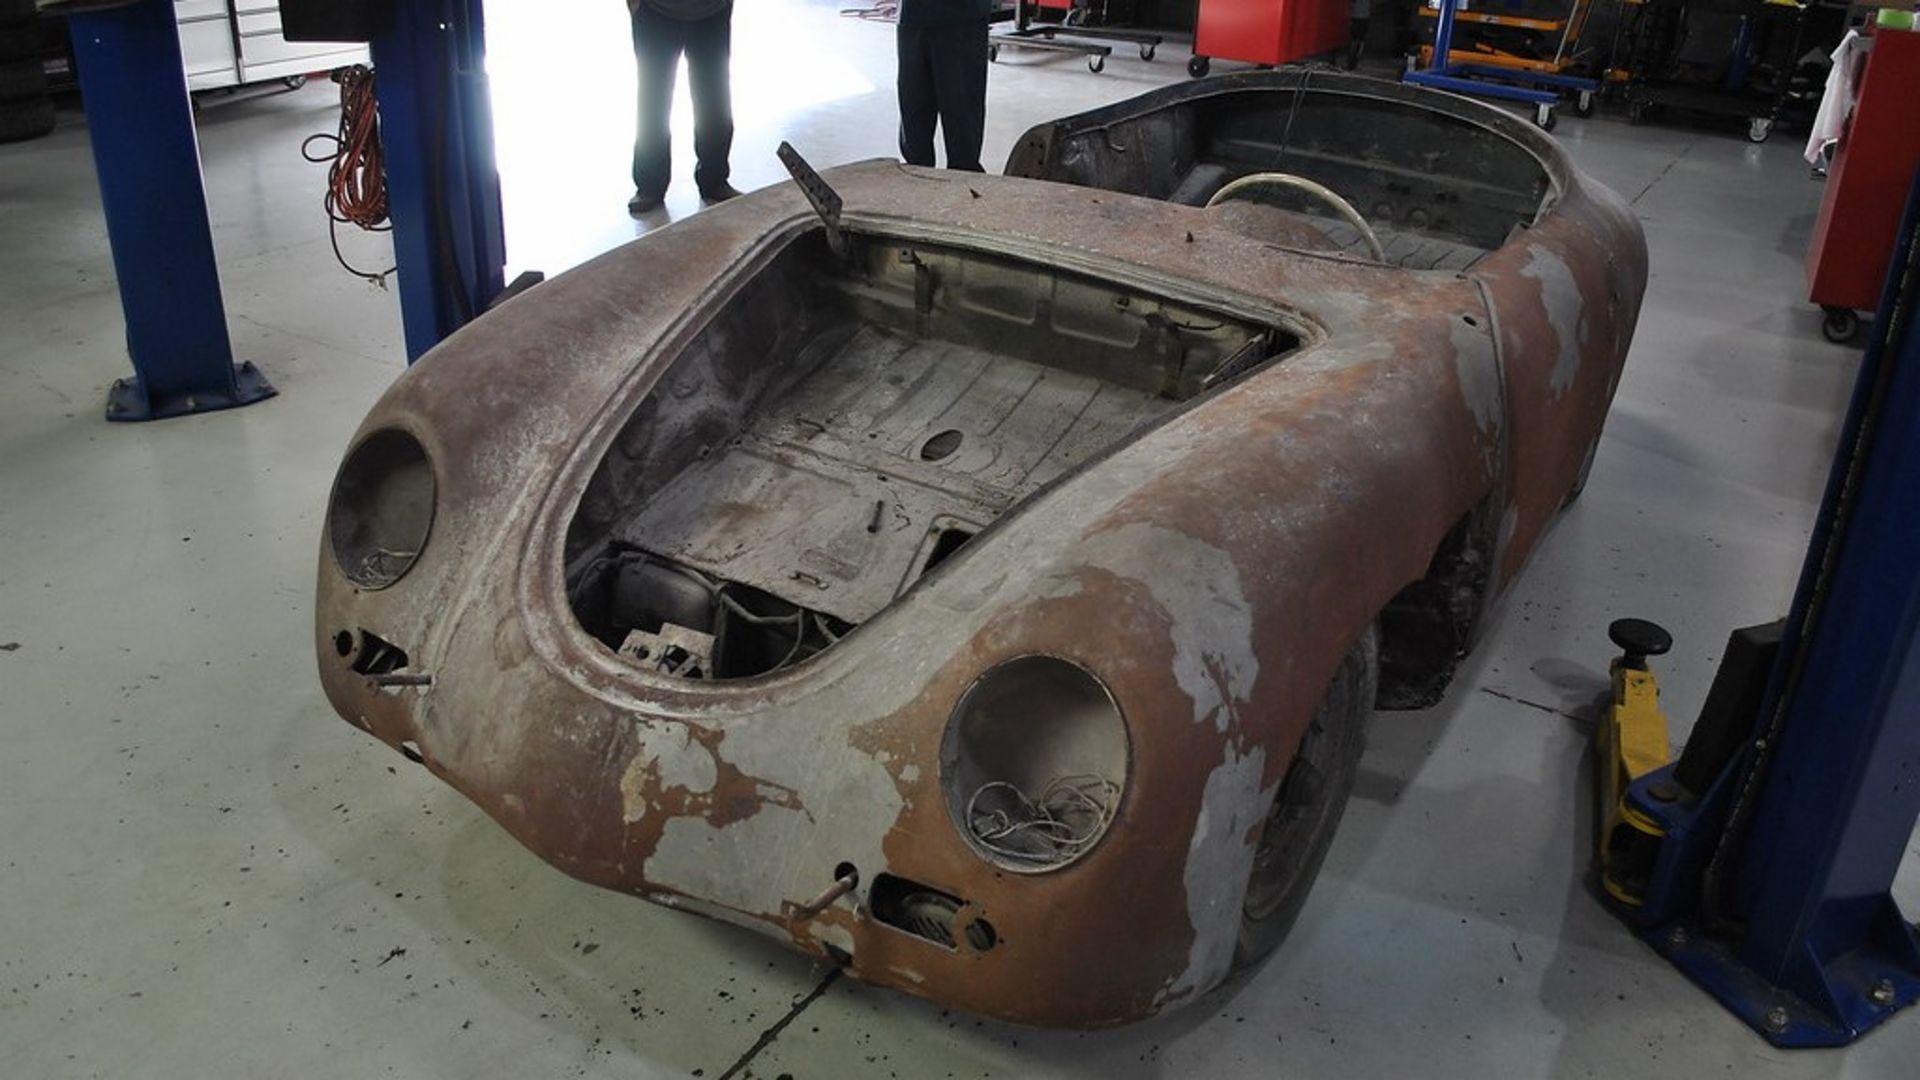 Porsche Woodland Hills is restoring a rusty Porsche 356 roadster for a contest